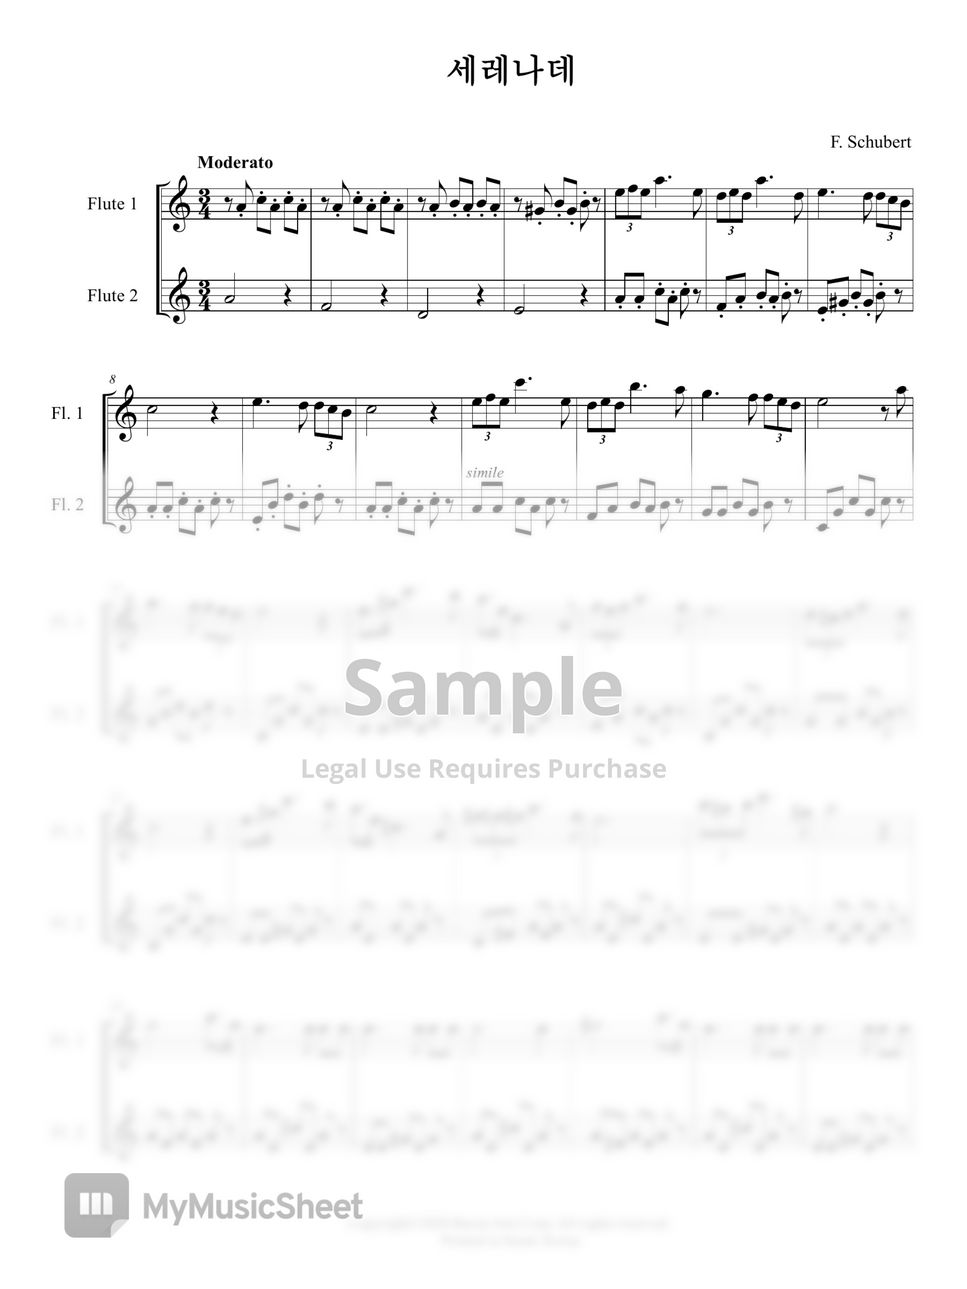 F. Schubert - 세레나데(Serenade, Flute Duet, 플룻 듀엣 (Flute Duet) by 바론아트